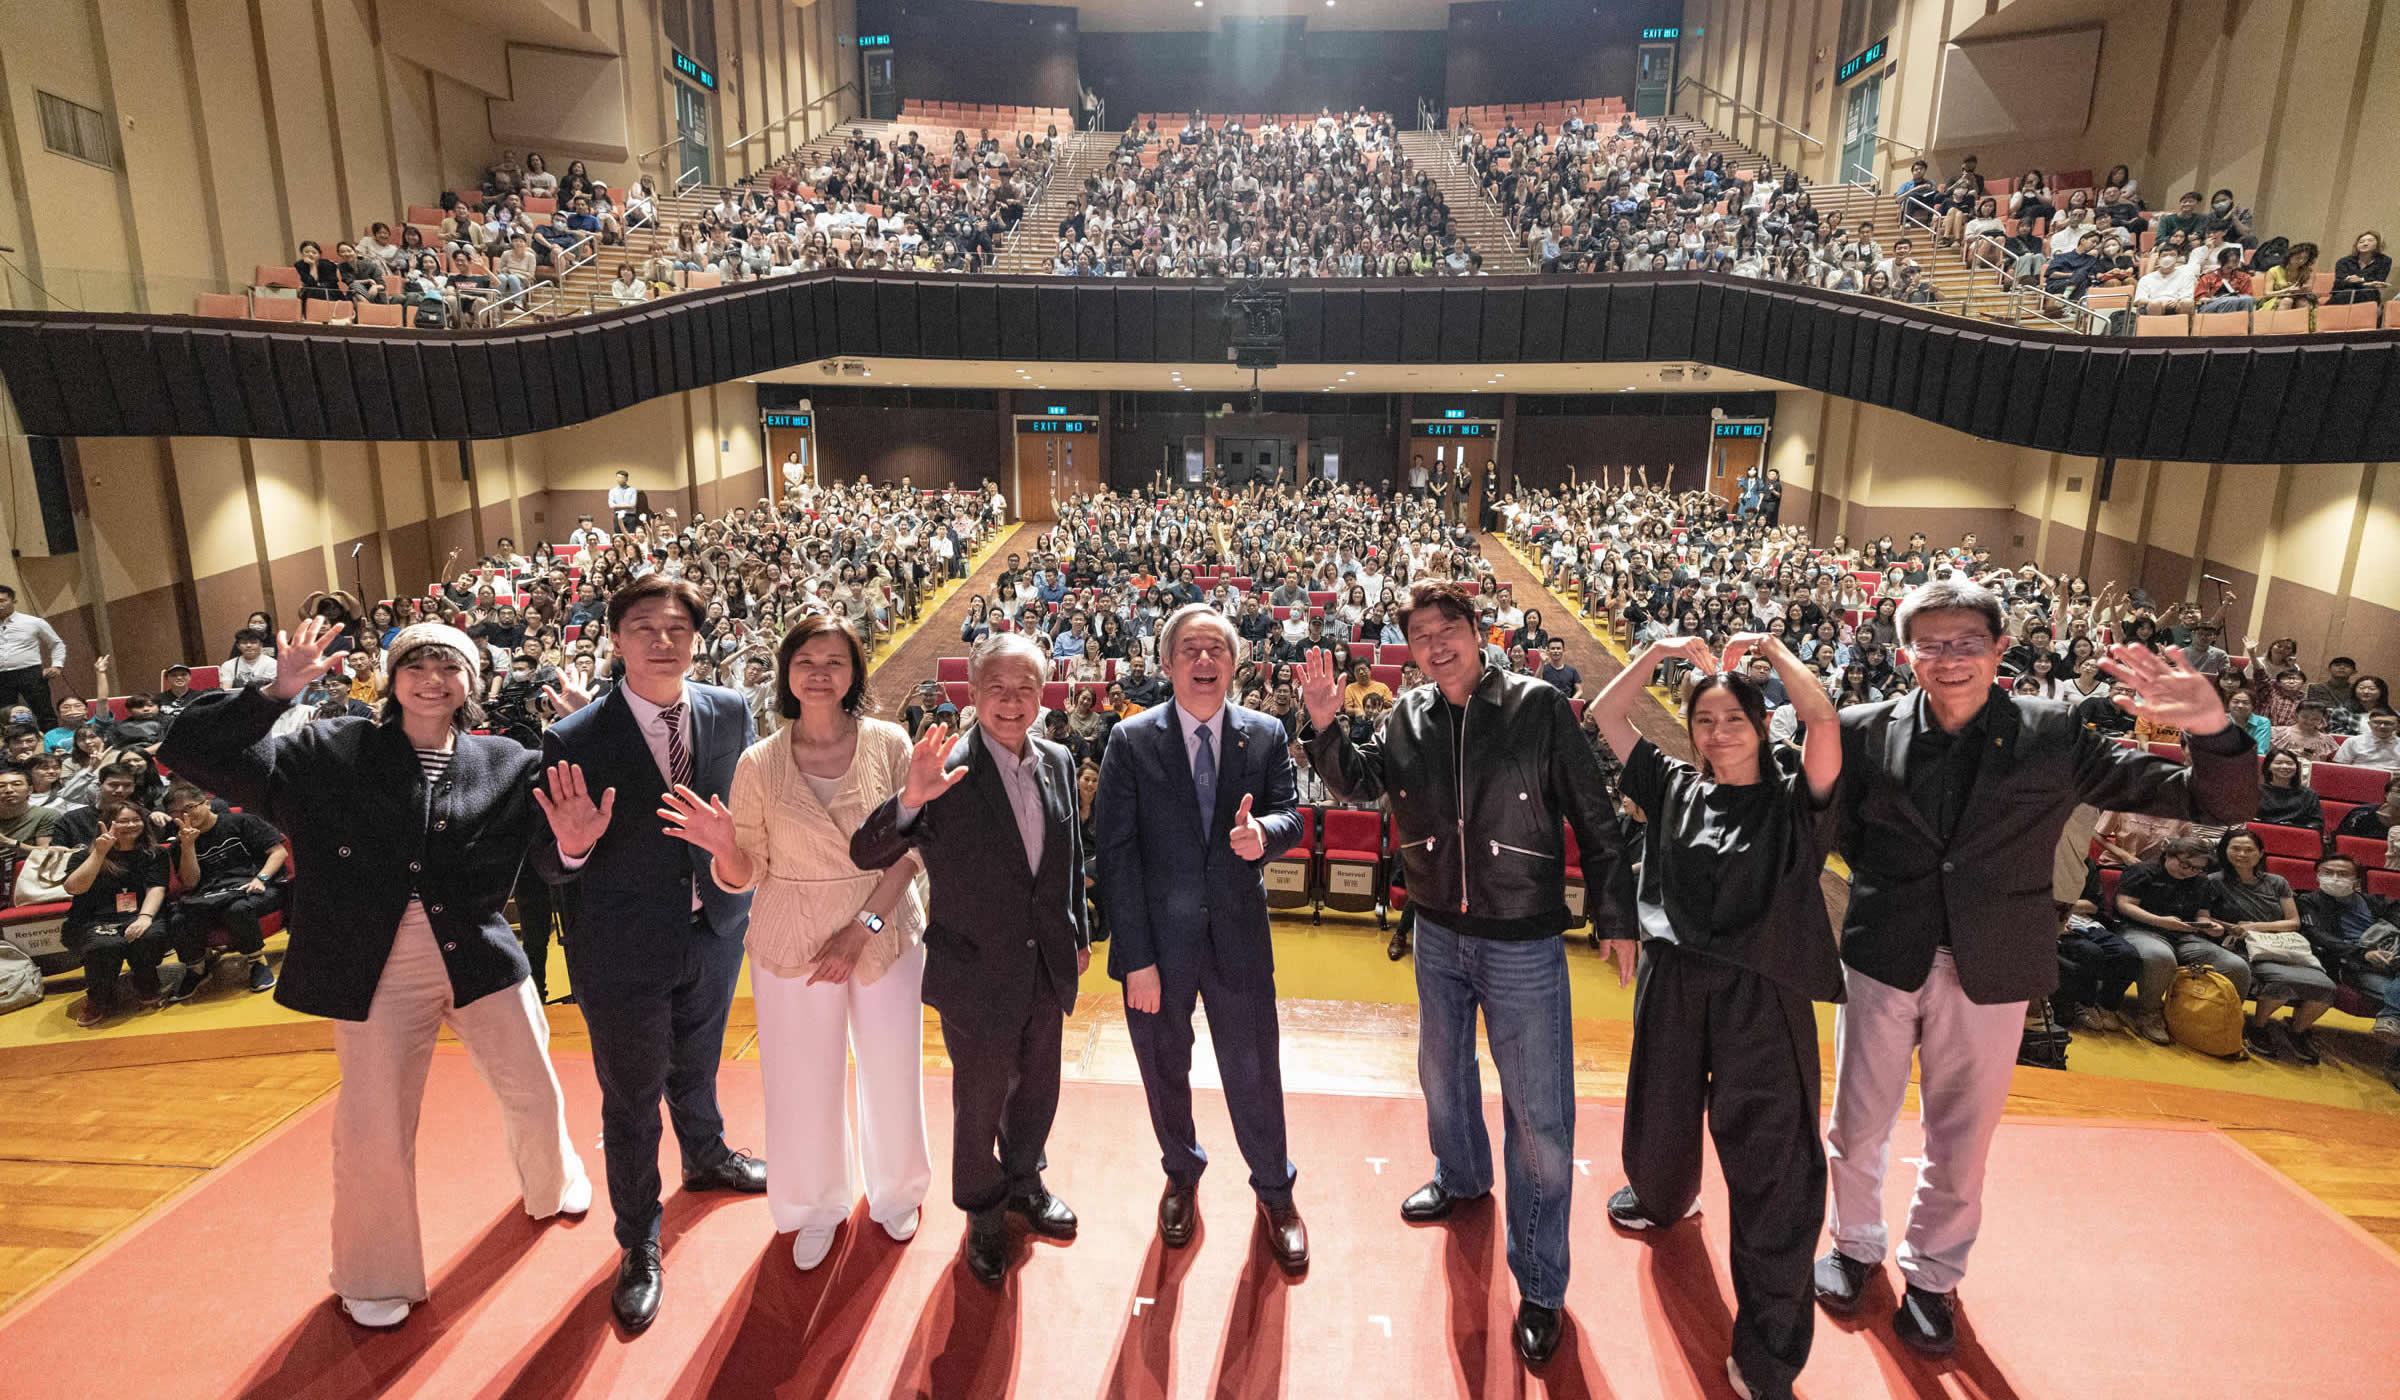 HKBU Presents Master Class by Award-winning Korean Actor Song Kang-ho